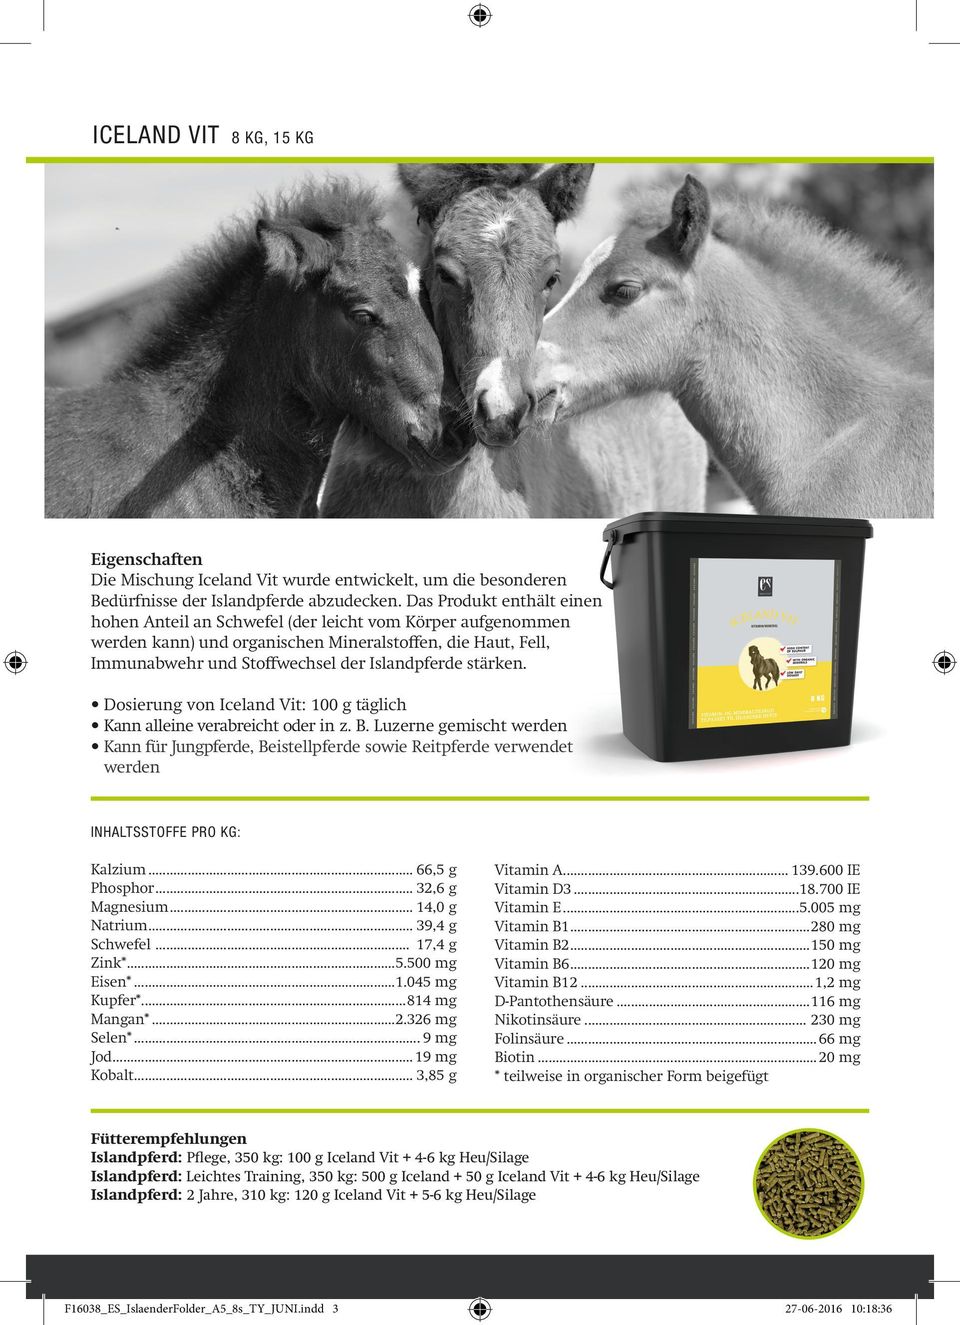 stärken. Dosierung von Iceland Vit: 100 g täglich Kann alleine verabreicht oder in z. B. Luzerne gemischt werden Kann für Jungpferde, Beistellpferde sowie Reitpferde verwendet werden Kalzium.